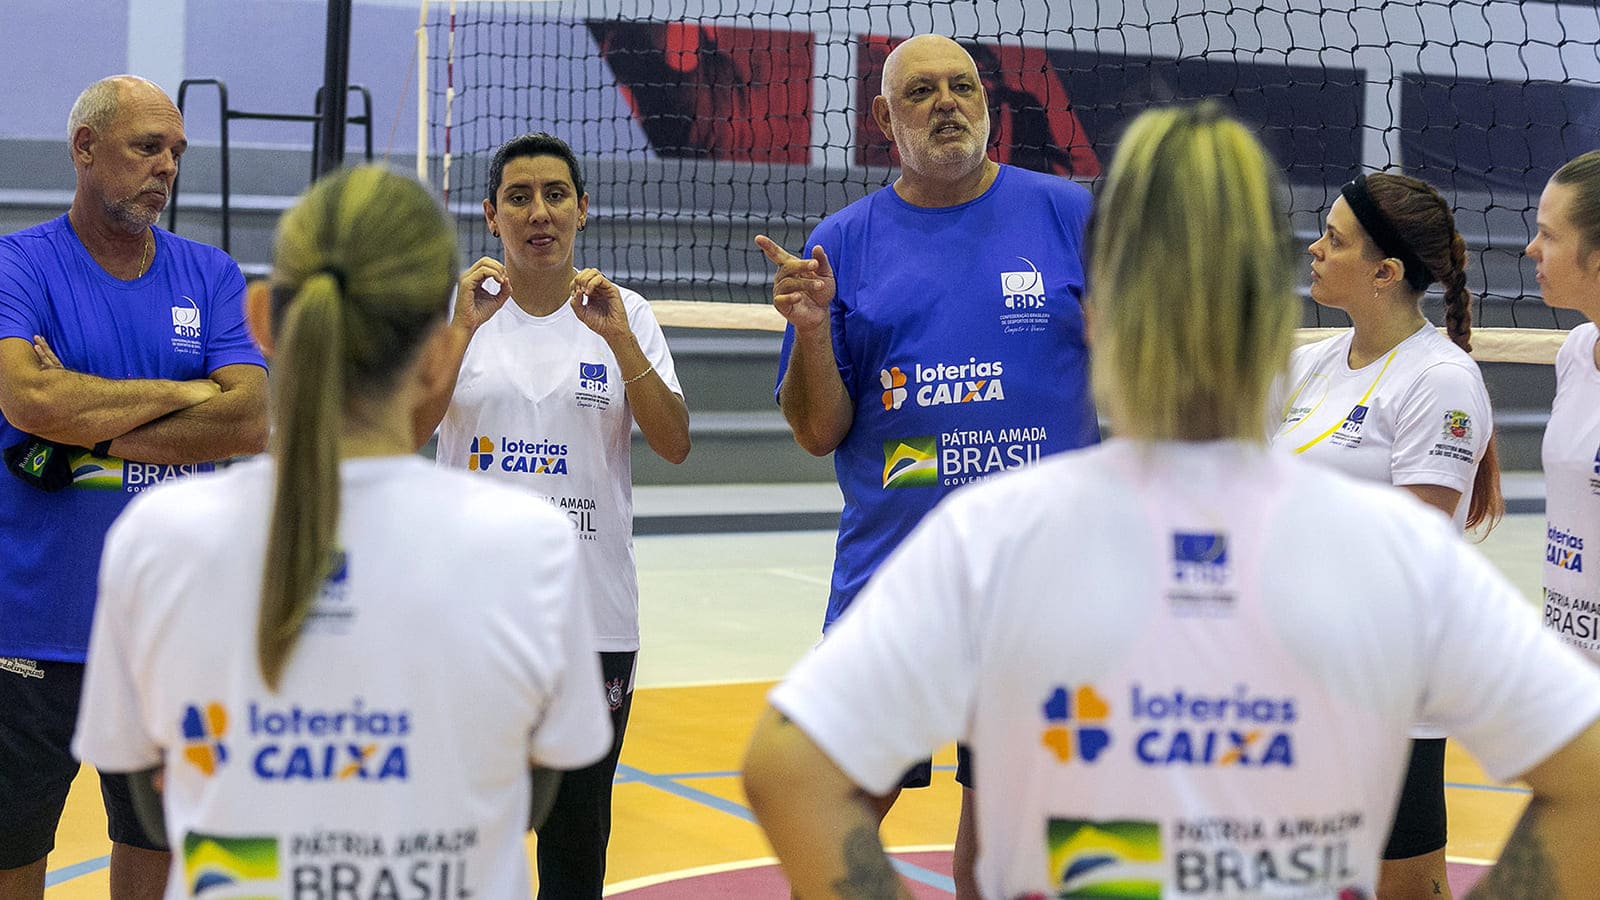 Coordenador técnico da Seleção Brasileira de Voleibol de Surdos conversa com atletas da nova seletiva de Vôlei da CBDS.